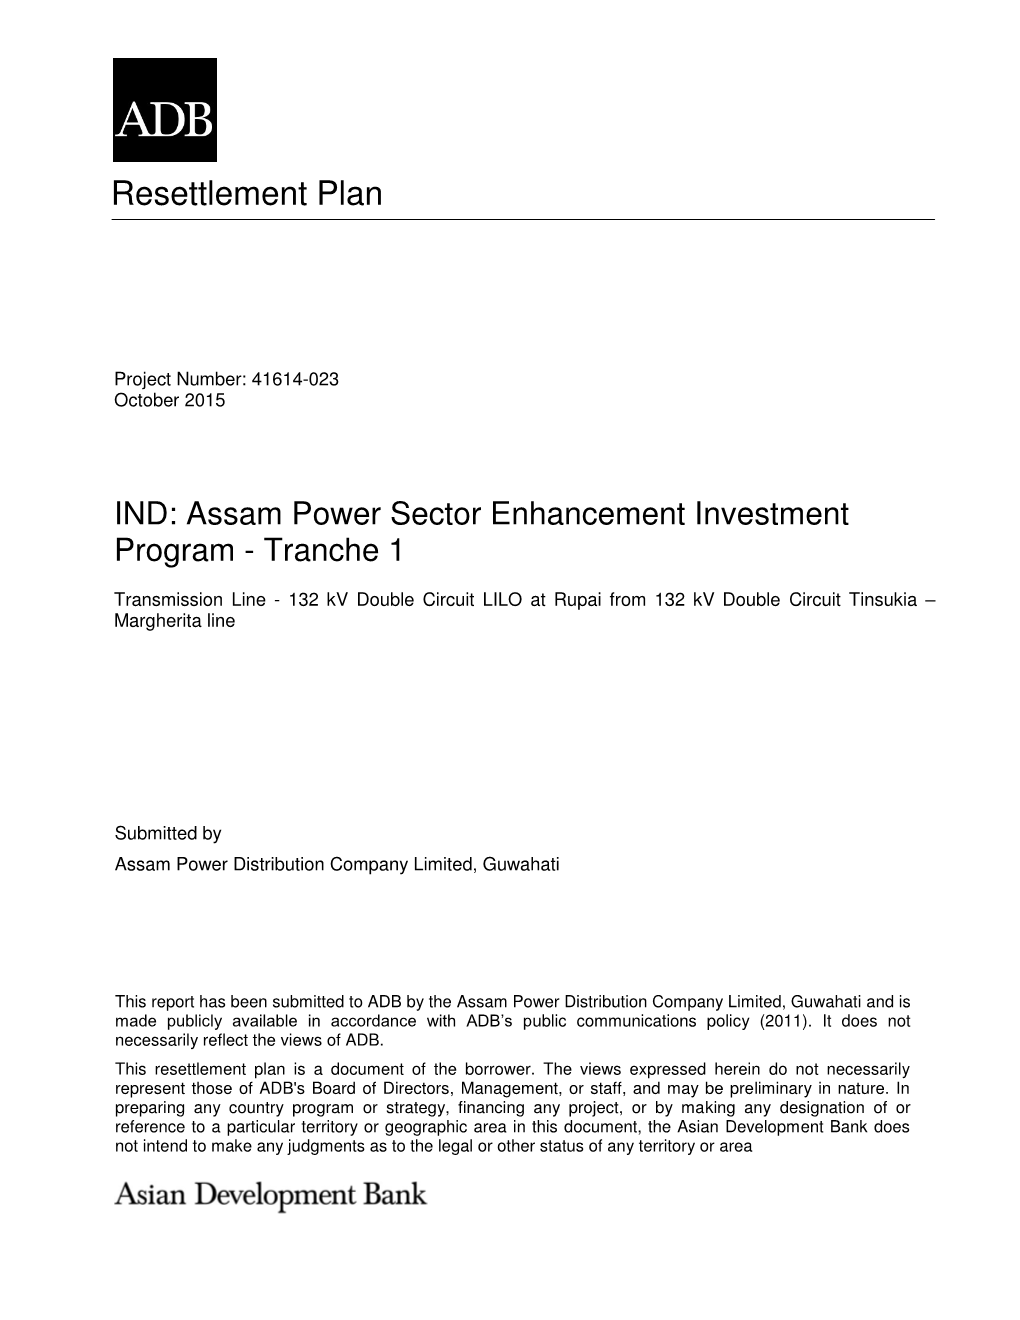 Assam Power Sector Enhancement Investment Program - Tranche 1